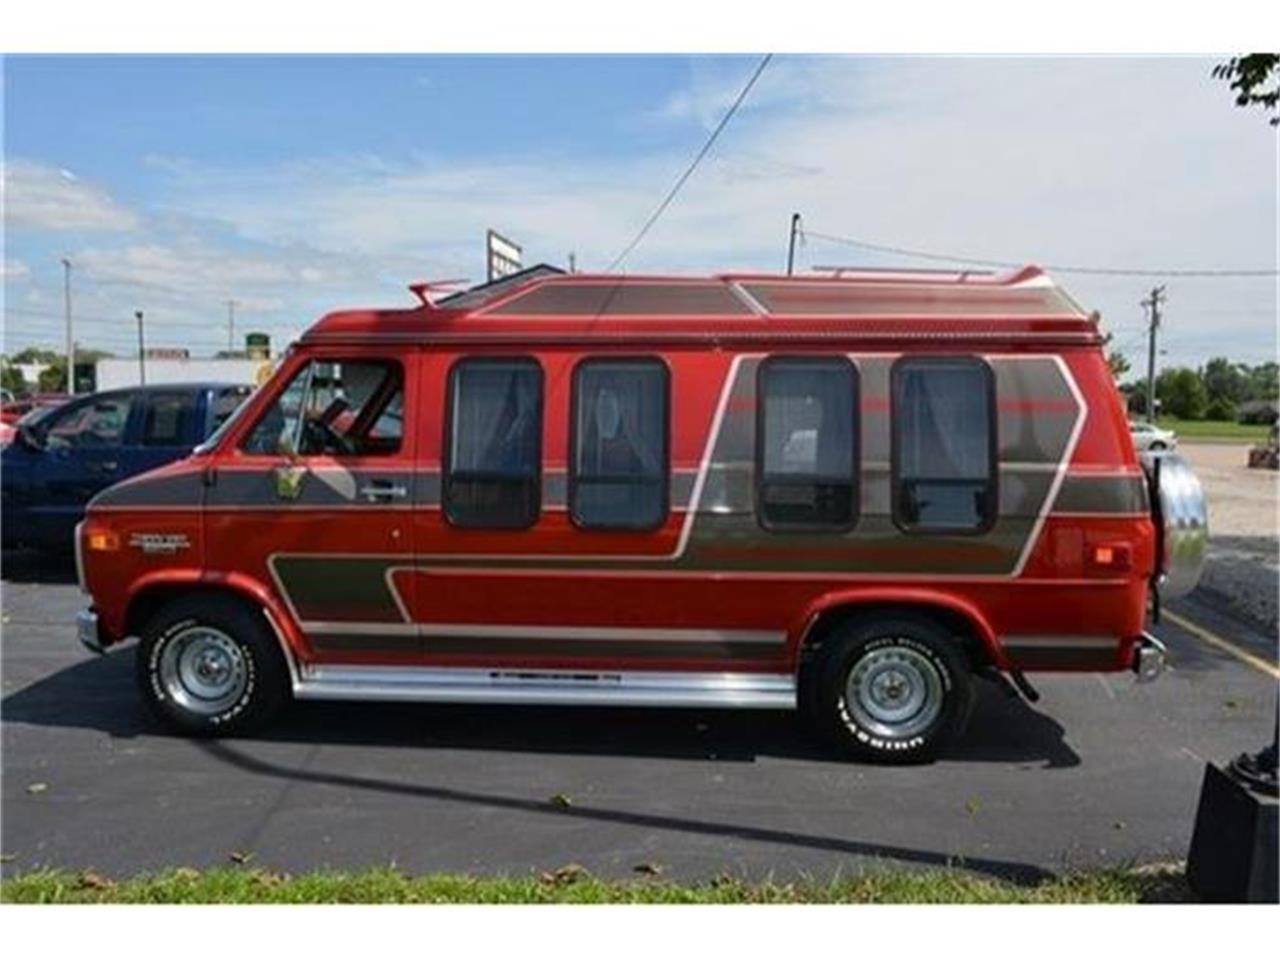 conversion van for sale